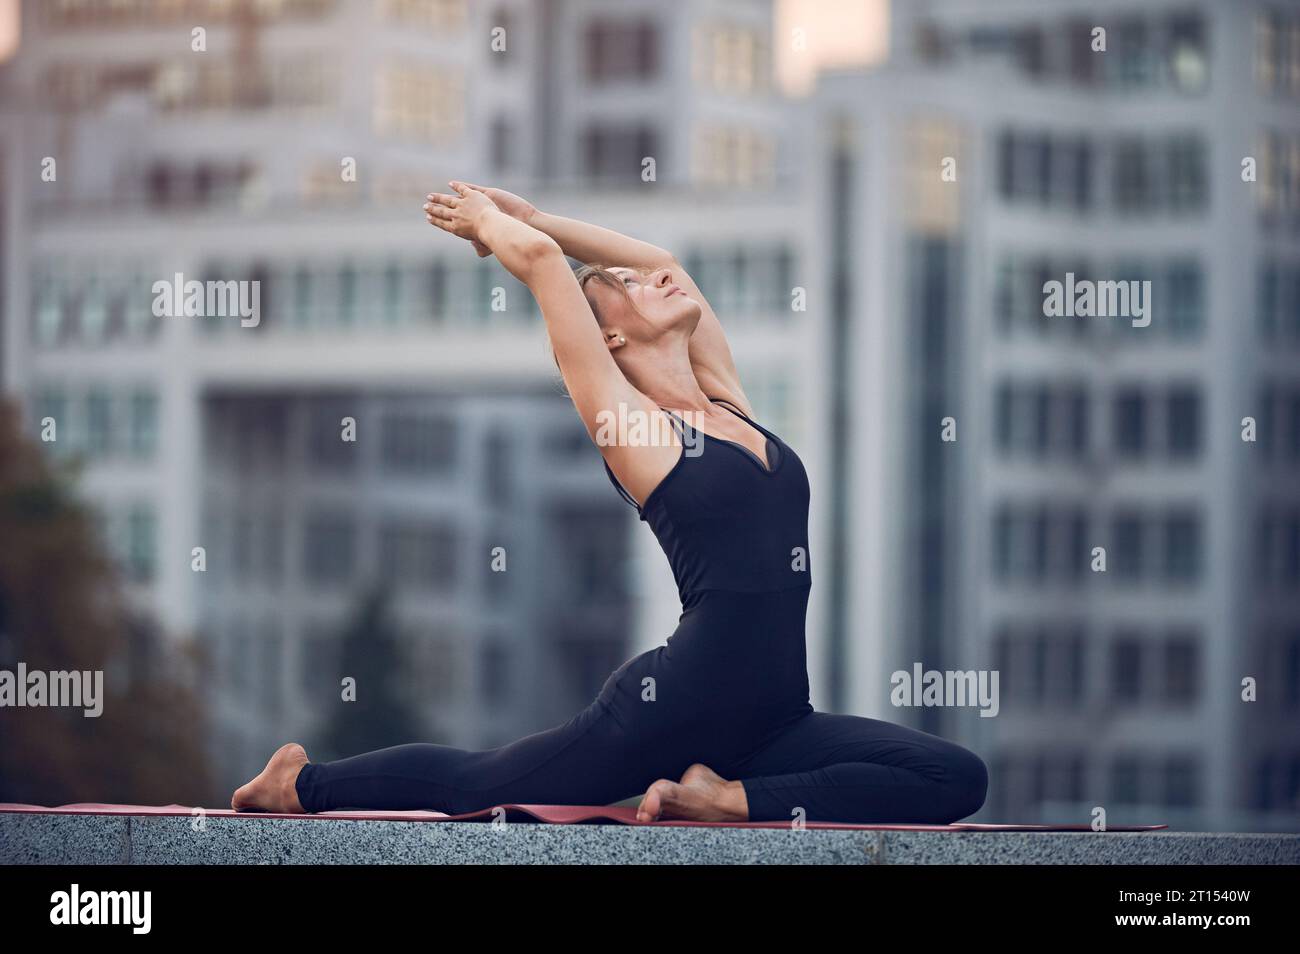 Schöne junge Frau praktiziert Yoga Asana eine beinige Königstaube Pose - Eka Pada Rajakapotasana im Freien vor dem Hintergrund einer modernen Stadt. Stockfoto